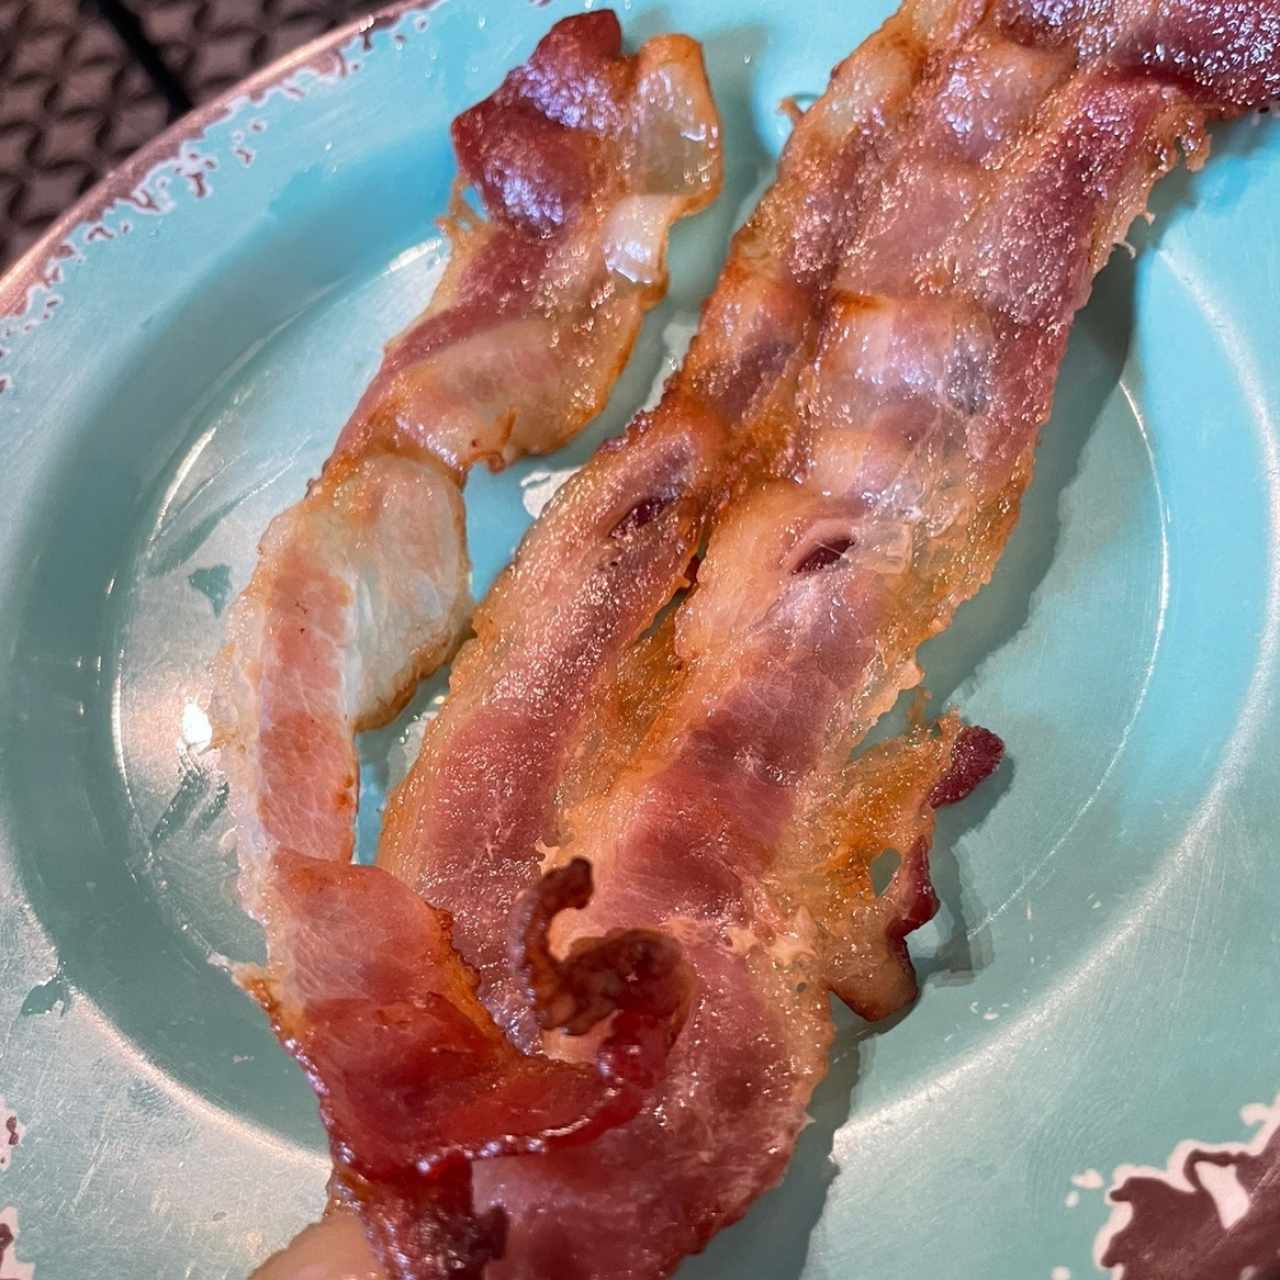 Extra bacon